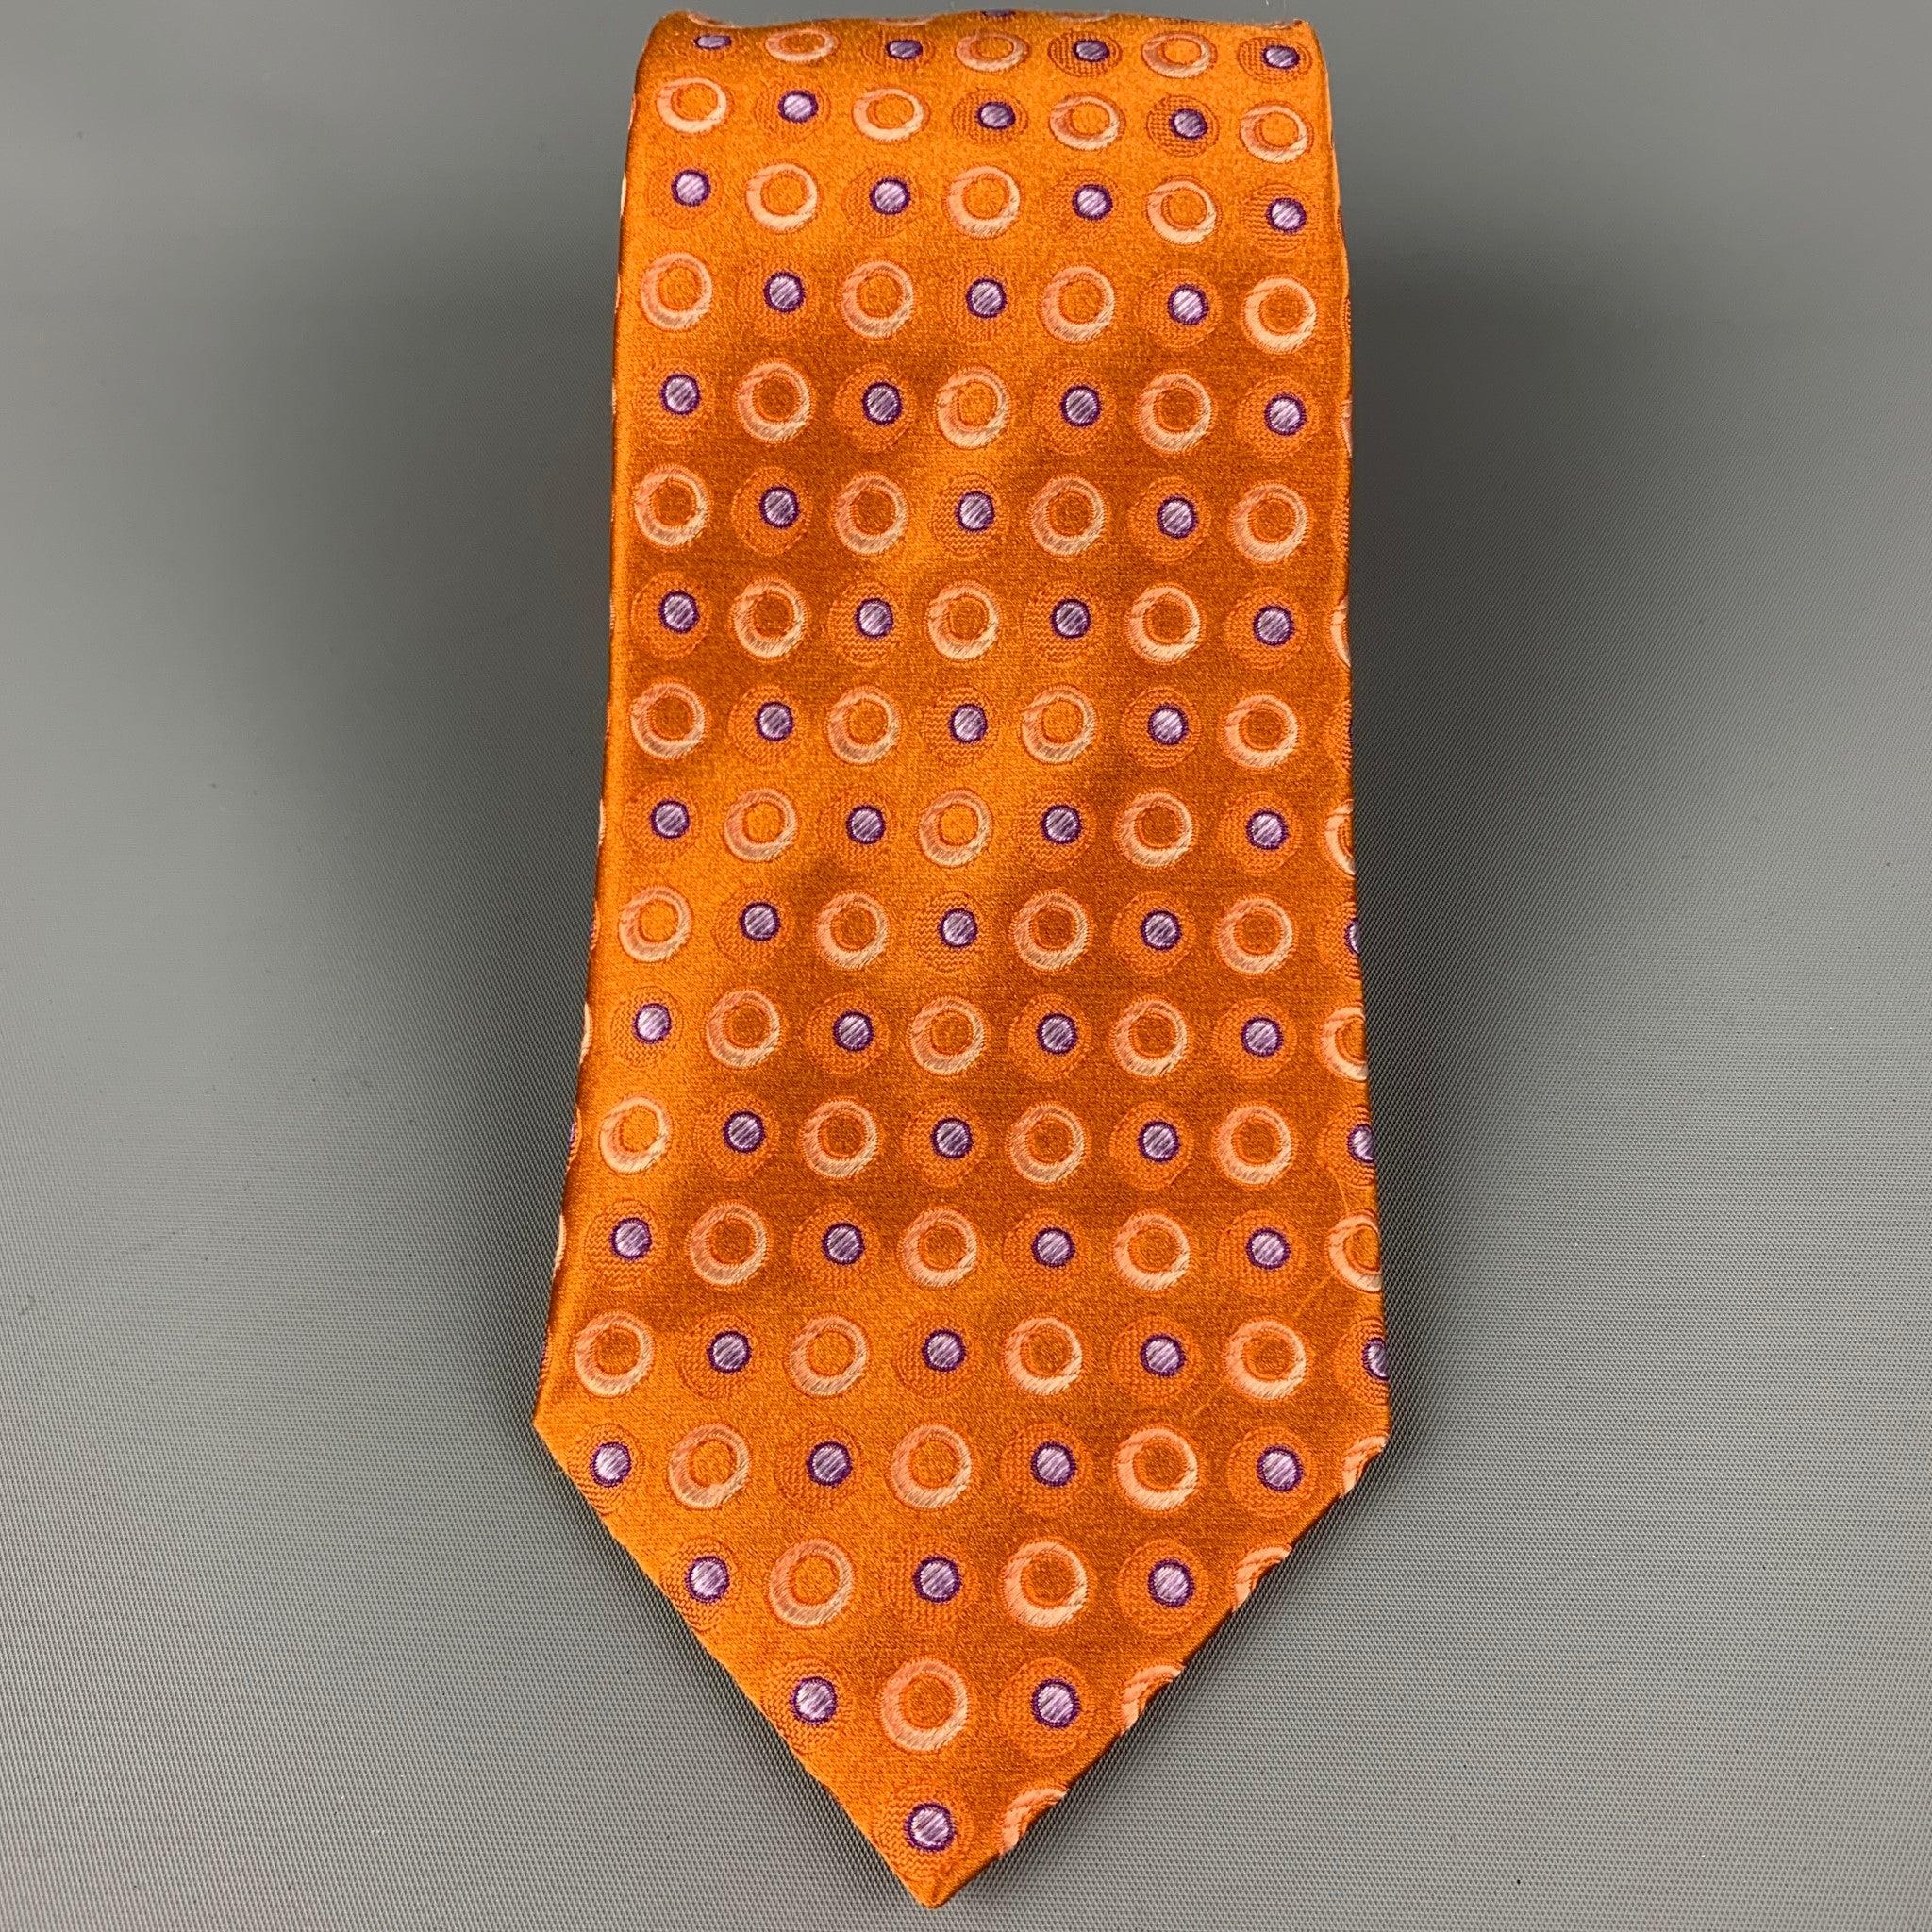 ERMENEGILDO ZEGNA
La cravate est en soie orange et violette avec un imprimé à pois. Fabriquées en Italie. Très bon état d'origine. 

Mesures : 
  Largeur : 3.75 pouces  Longueur : 60 pouces 
  
  
 
Référence Sui Generis : 120668
Catégorie :